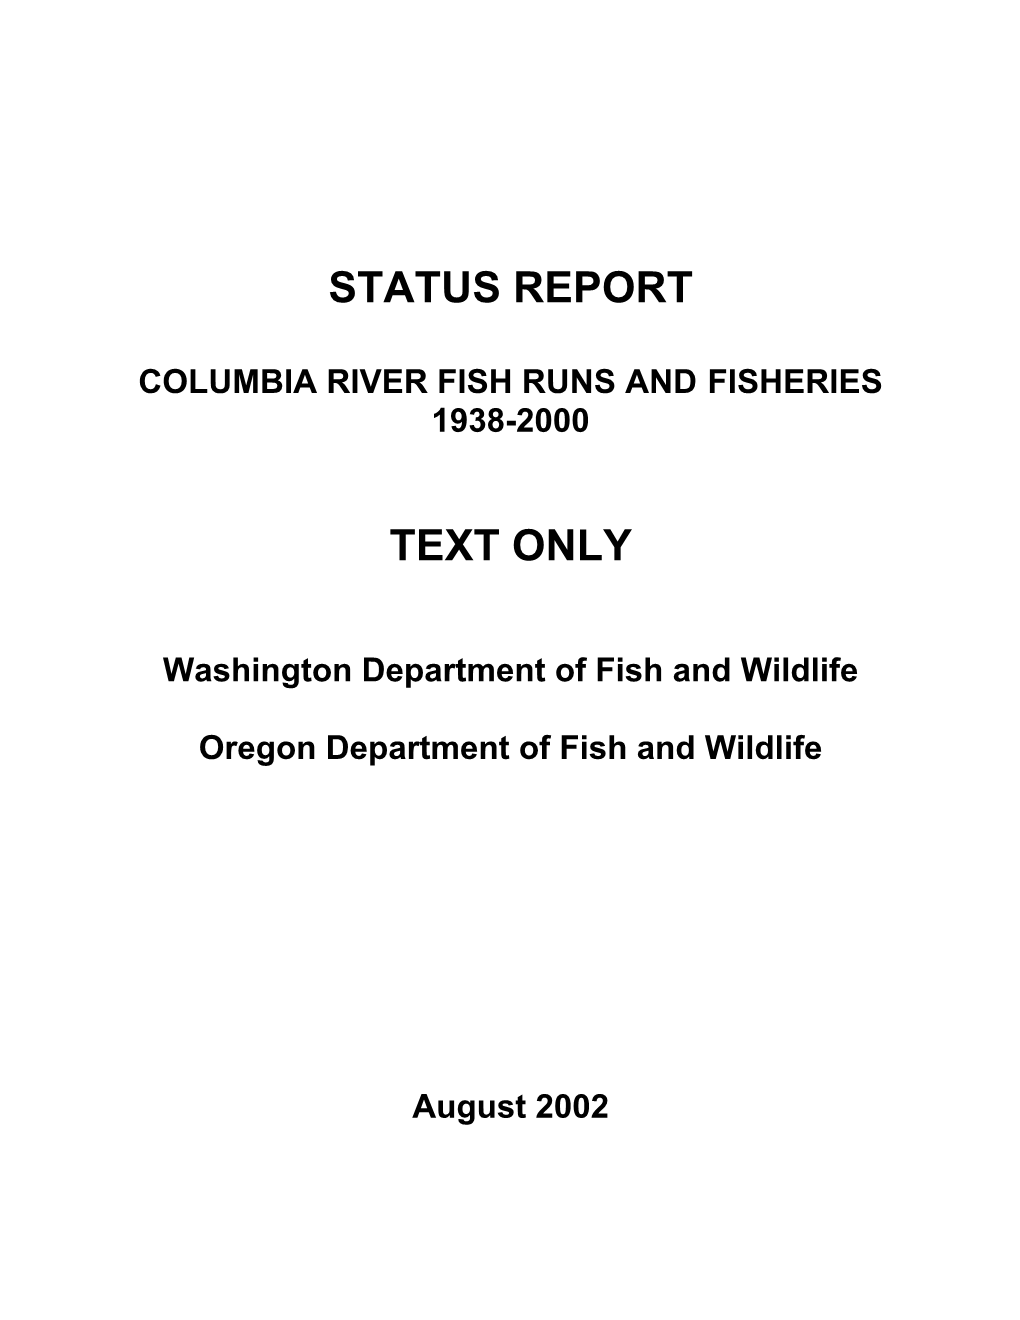 1938-2000 STATUS REPORT Columbia River Fish Runs